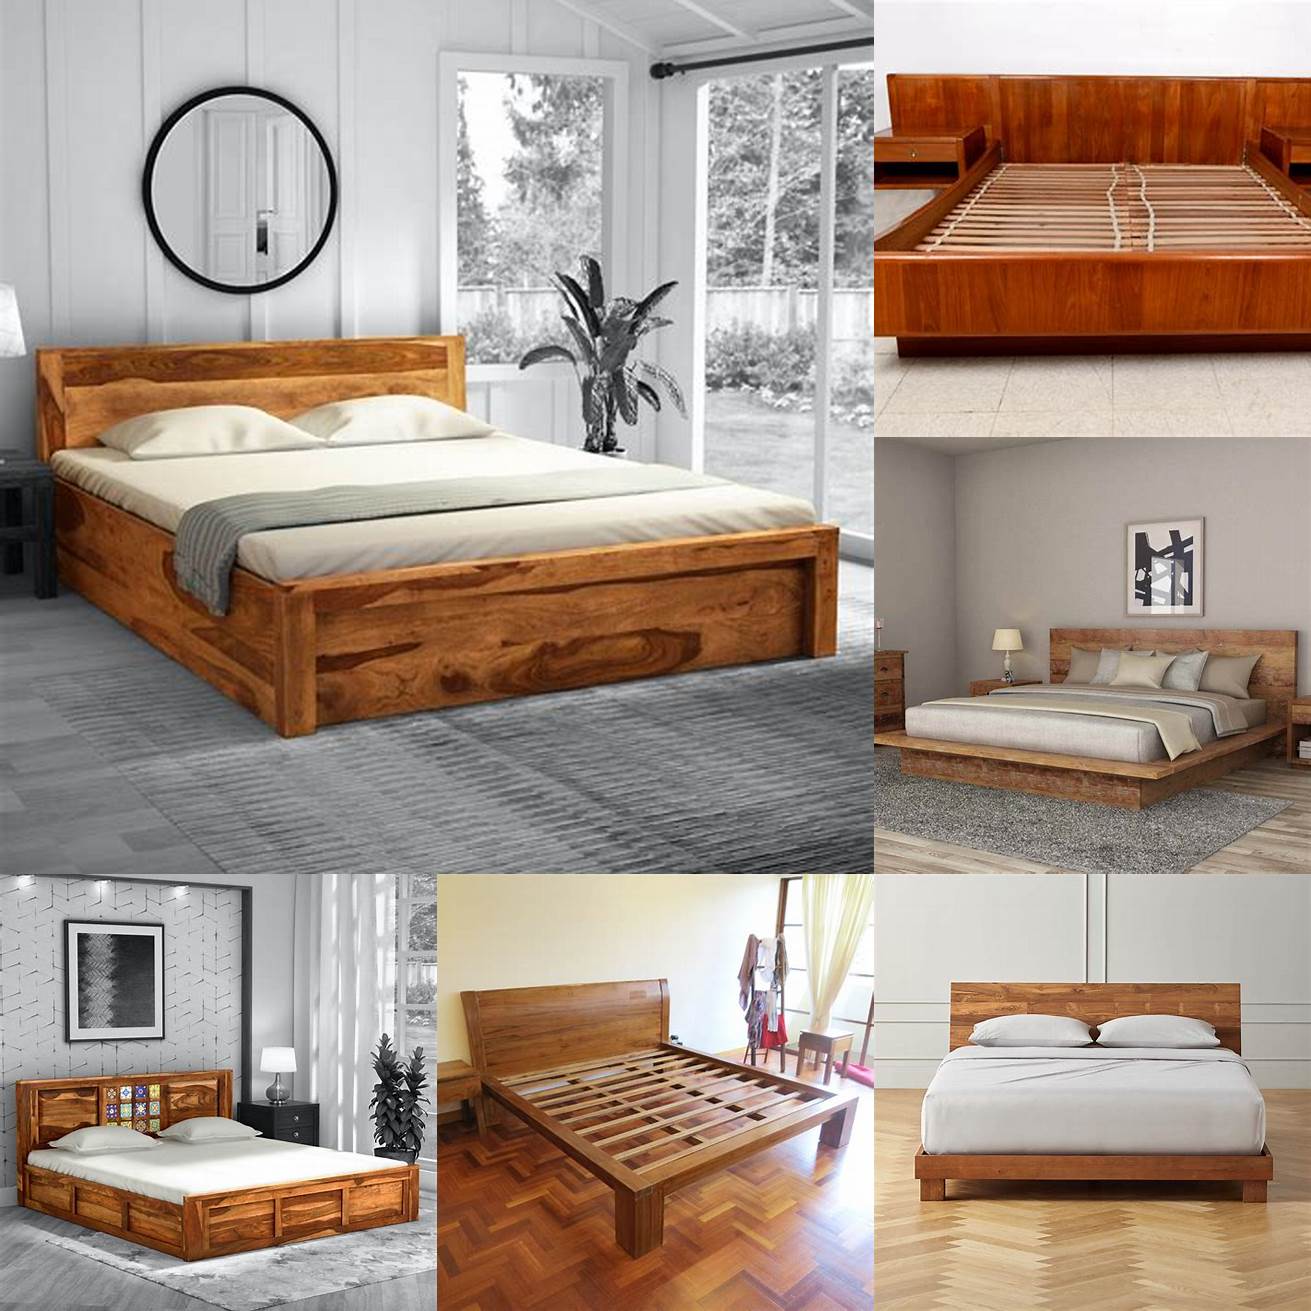 Teak wood bed frame